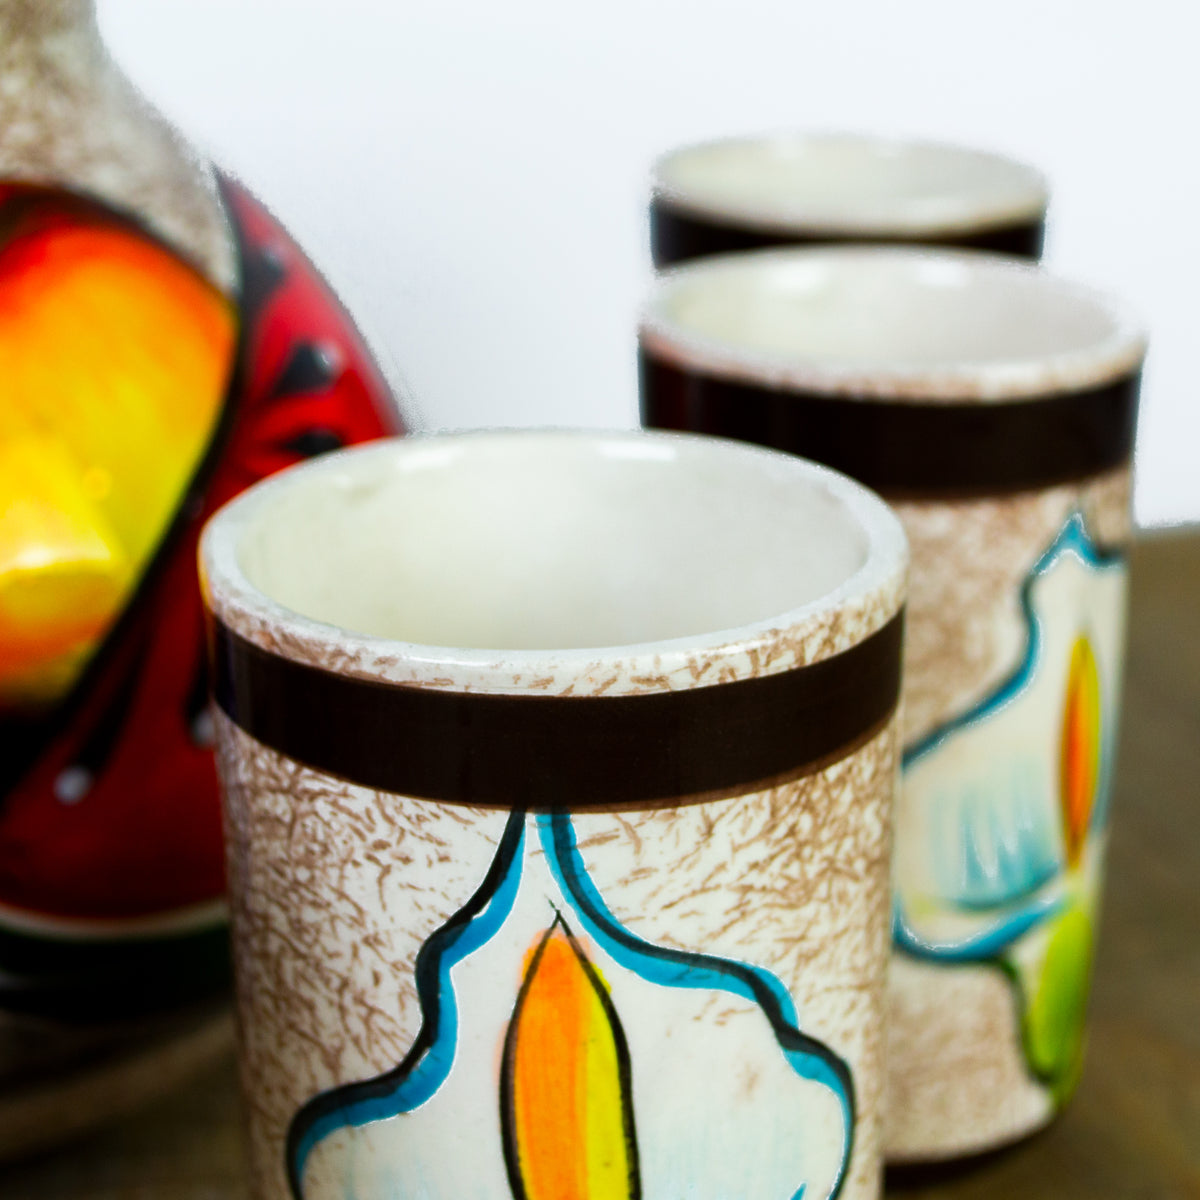 ▷ Jarras de agua de Cerámica artesanal, porcelana y gres – MESAS BOONITAS